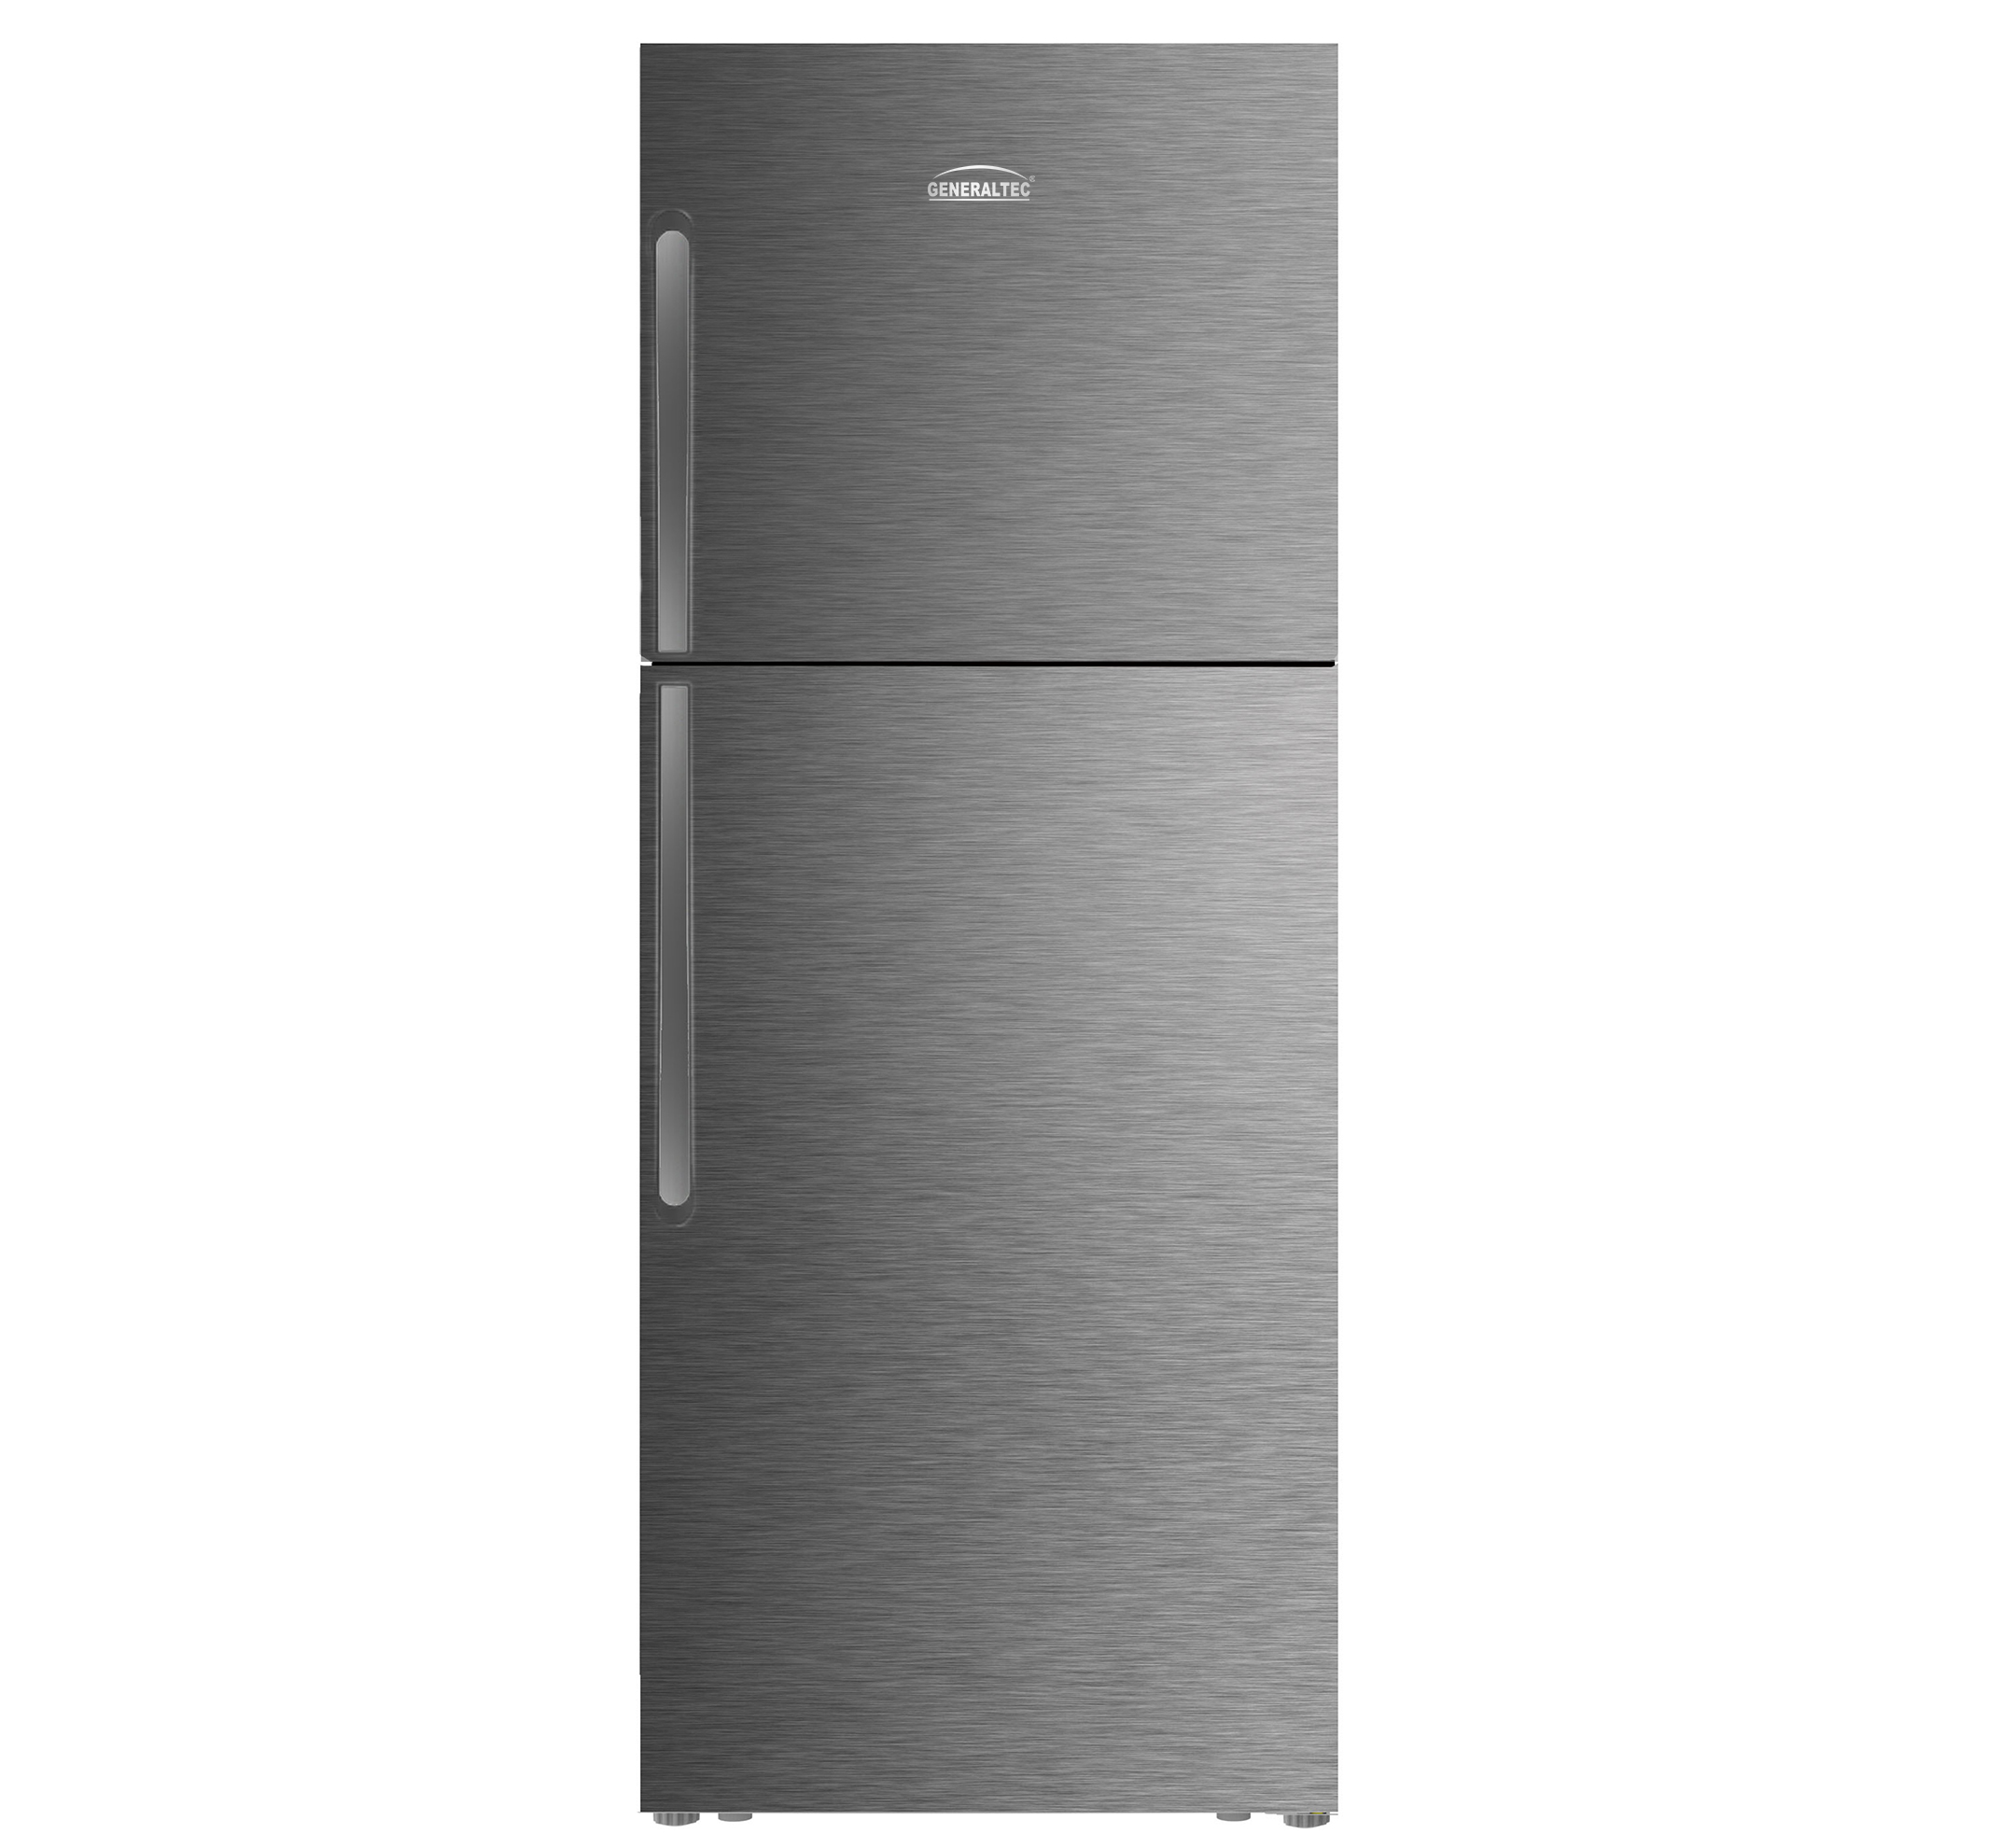 Refrigerator Double Door Model No. GR650KS